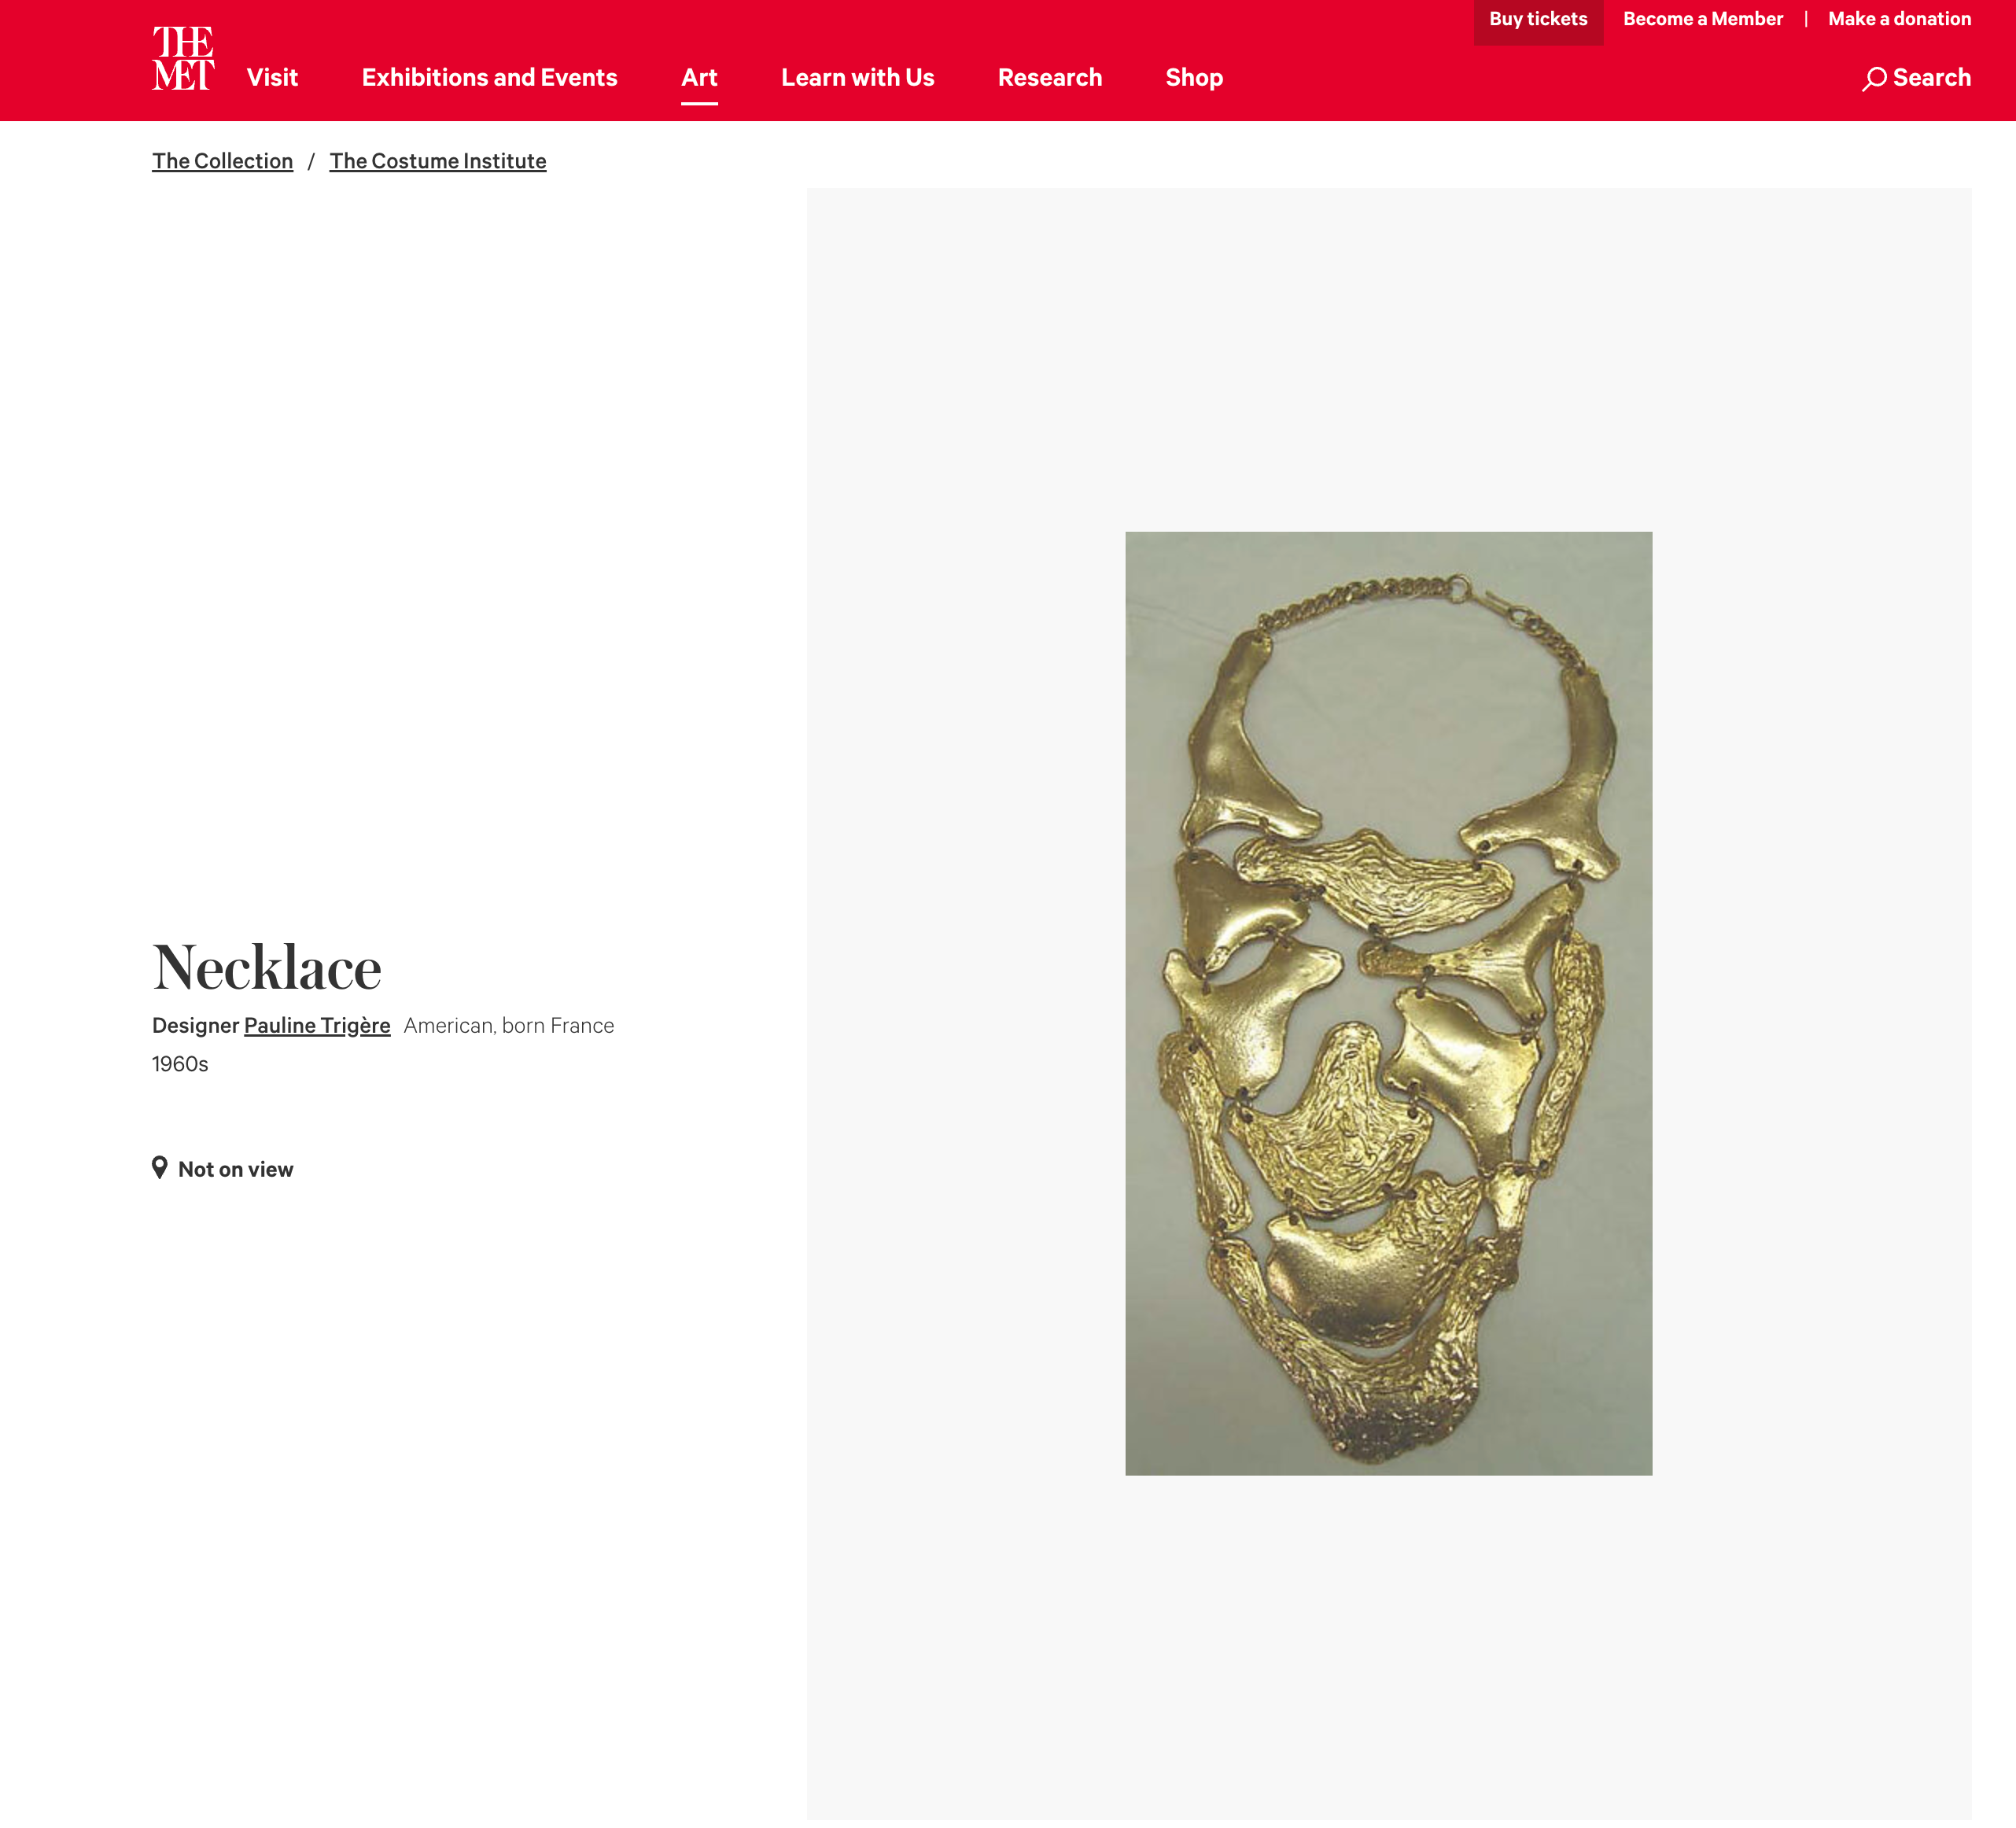 Vintage bib necklace screen shot from The Met website @recessla